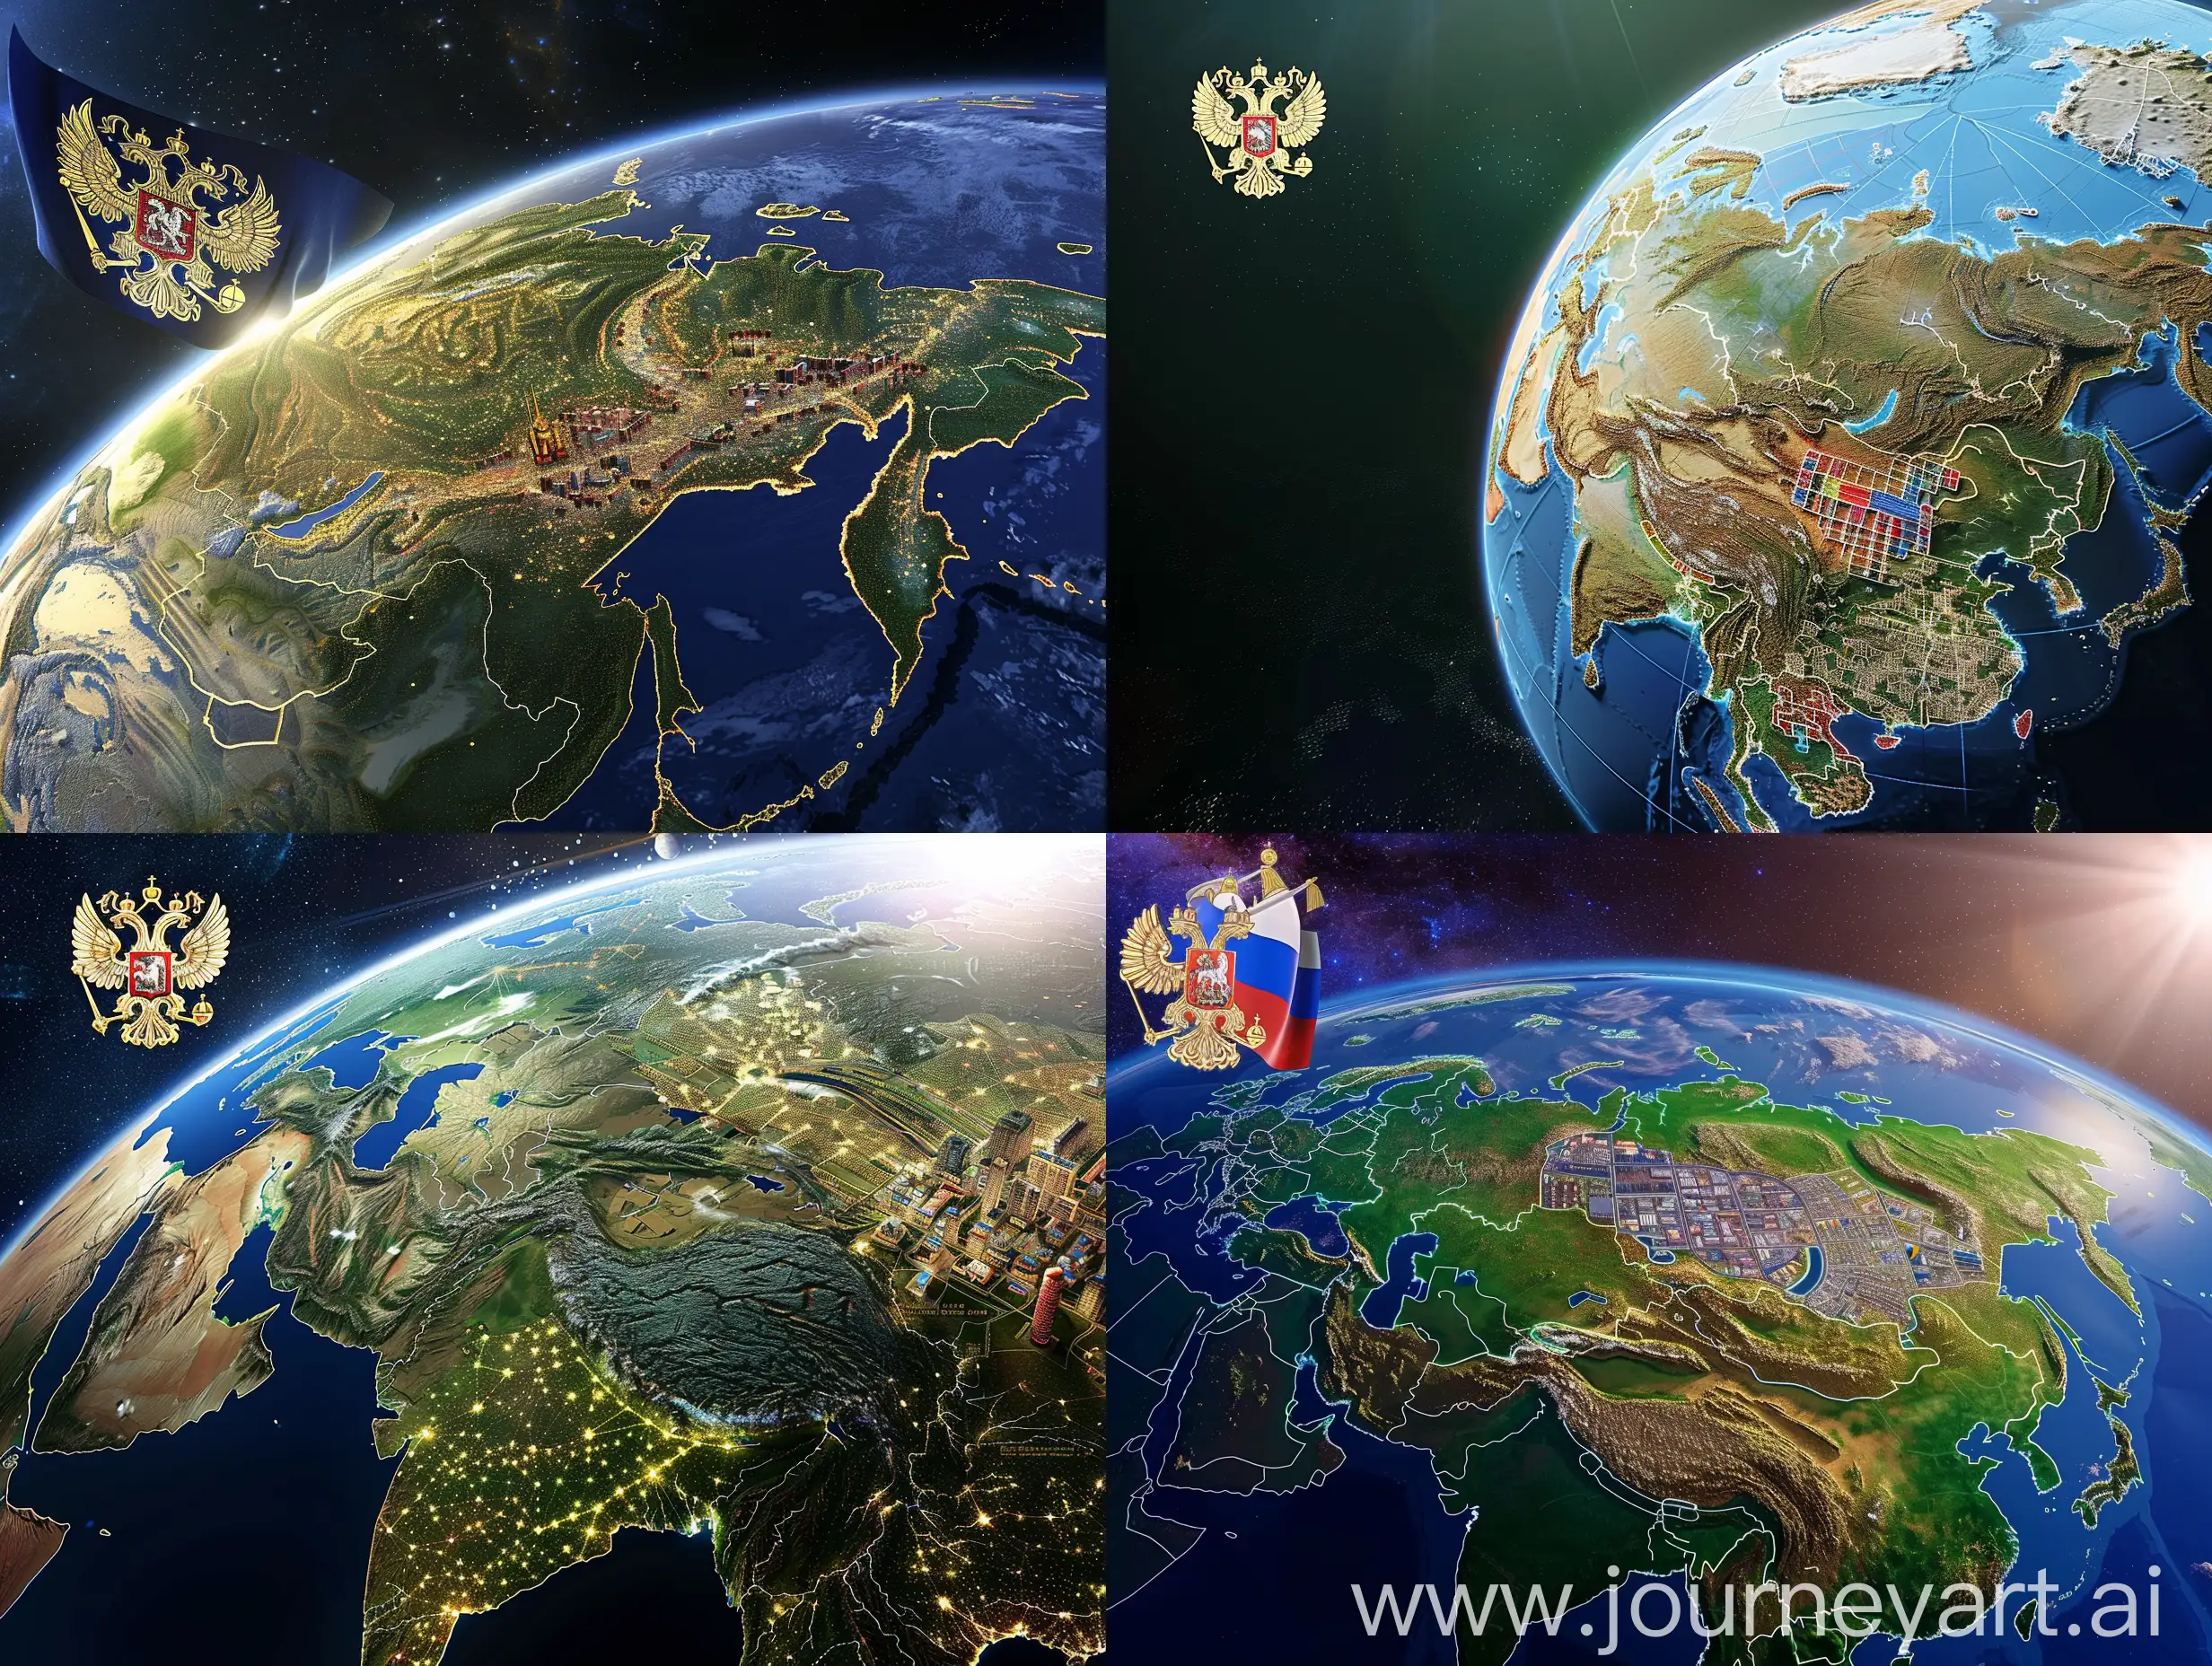 земной шар из космоса крупно, контур россии, внутри контура города, заводы, поля, и флаг россии, герб россии над землей слева